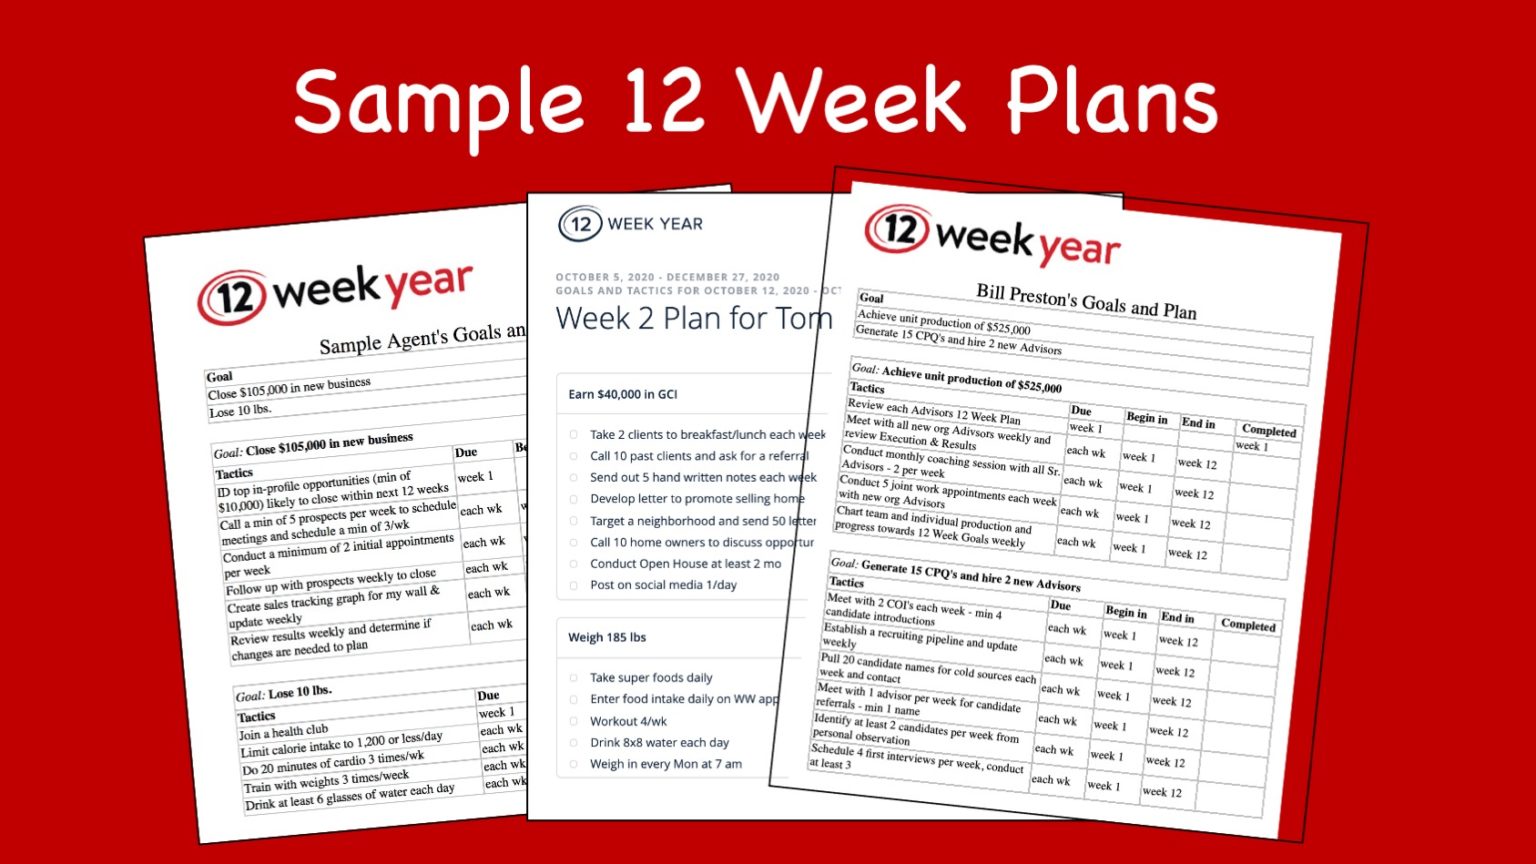 Sample 12 Week Plans The 12 Week Year